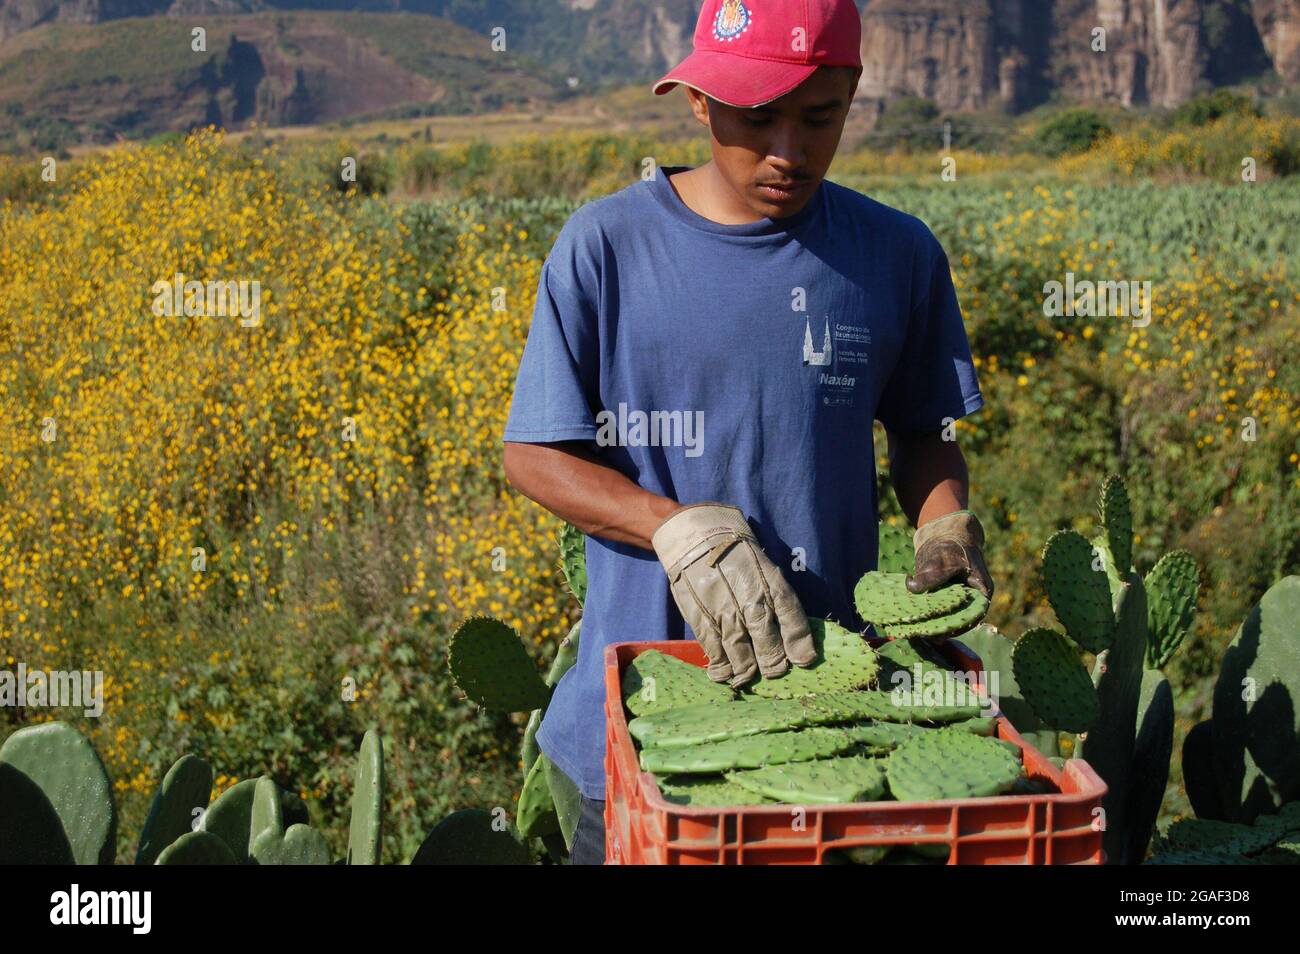 Junger Mann, der Nopal, einen essbaren Kaktus, in Kisten sortiert. Stockfoto